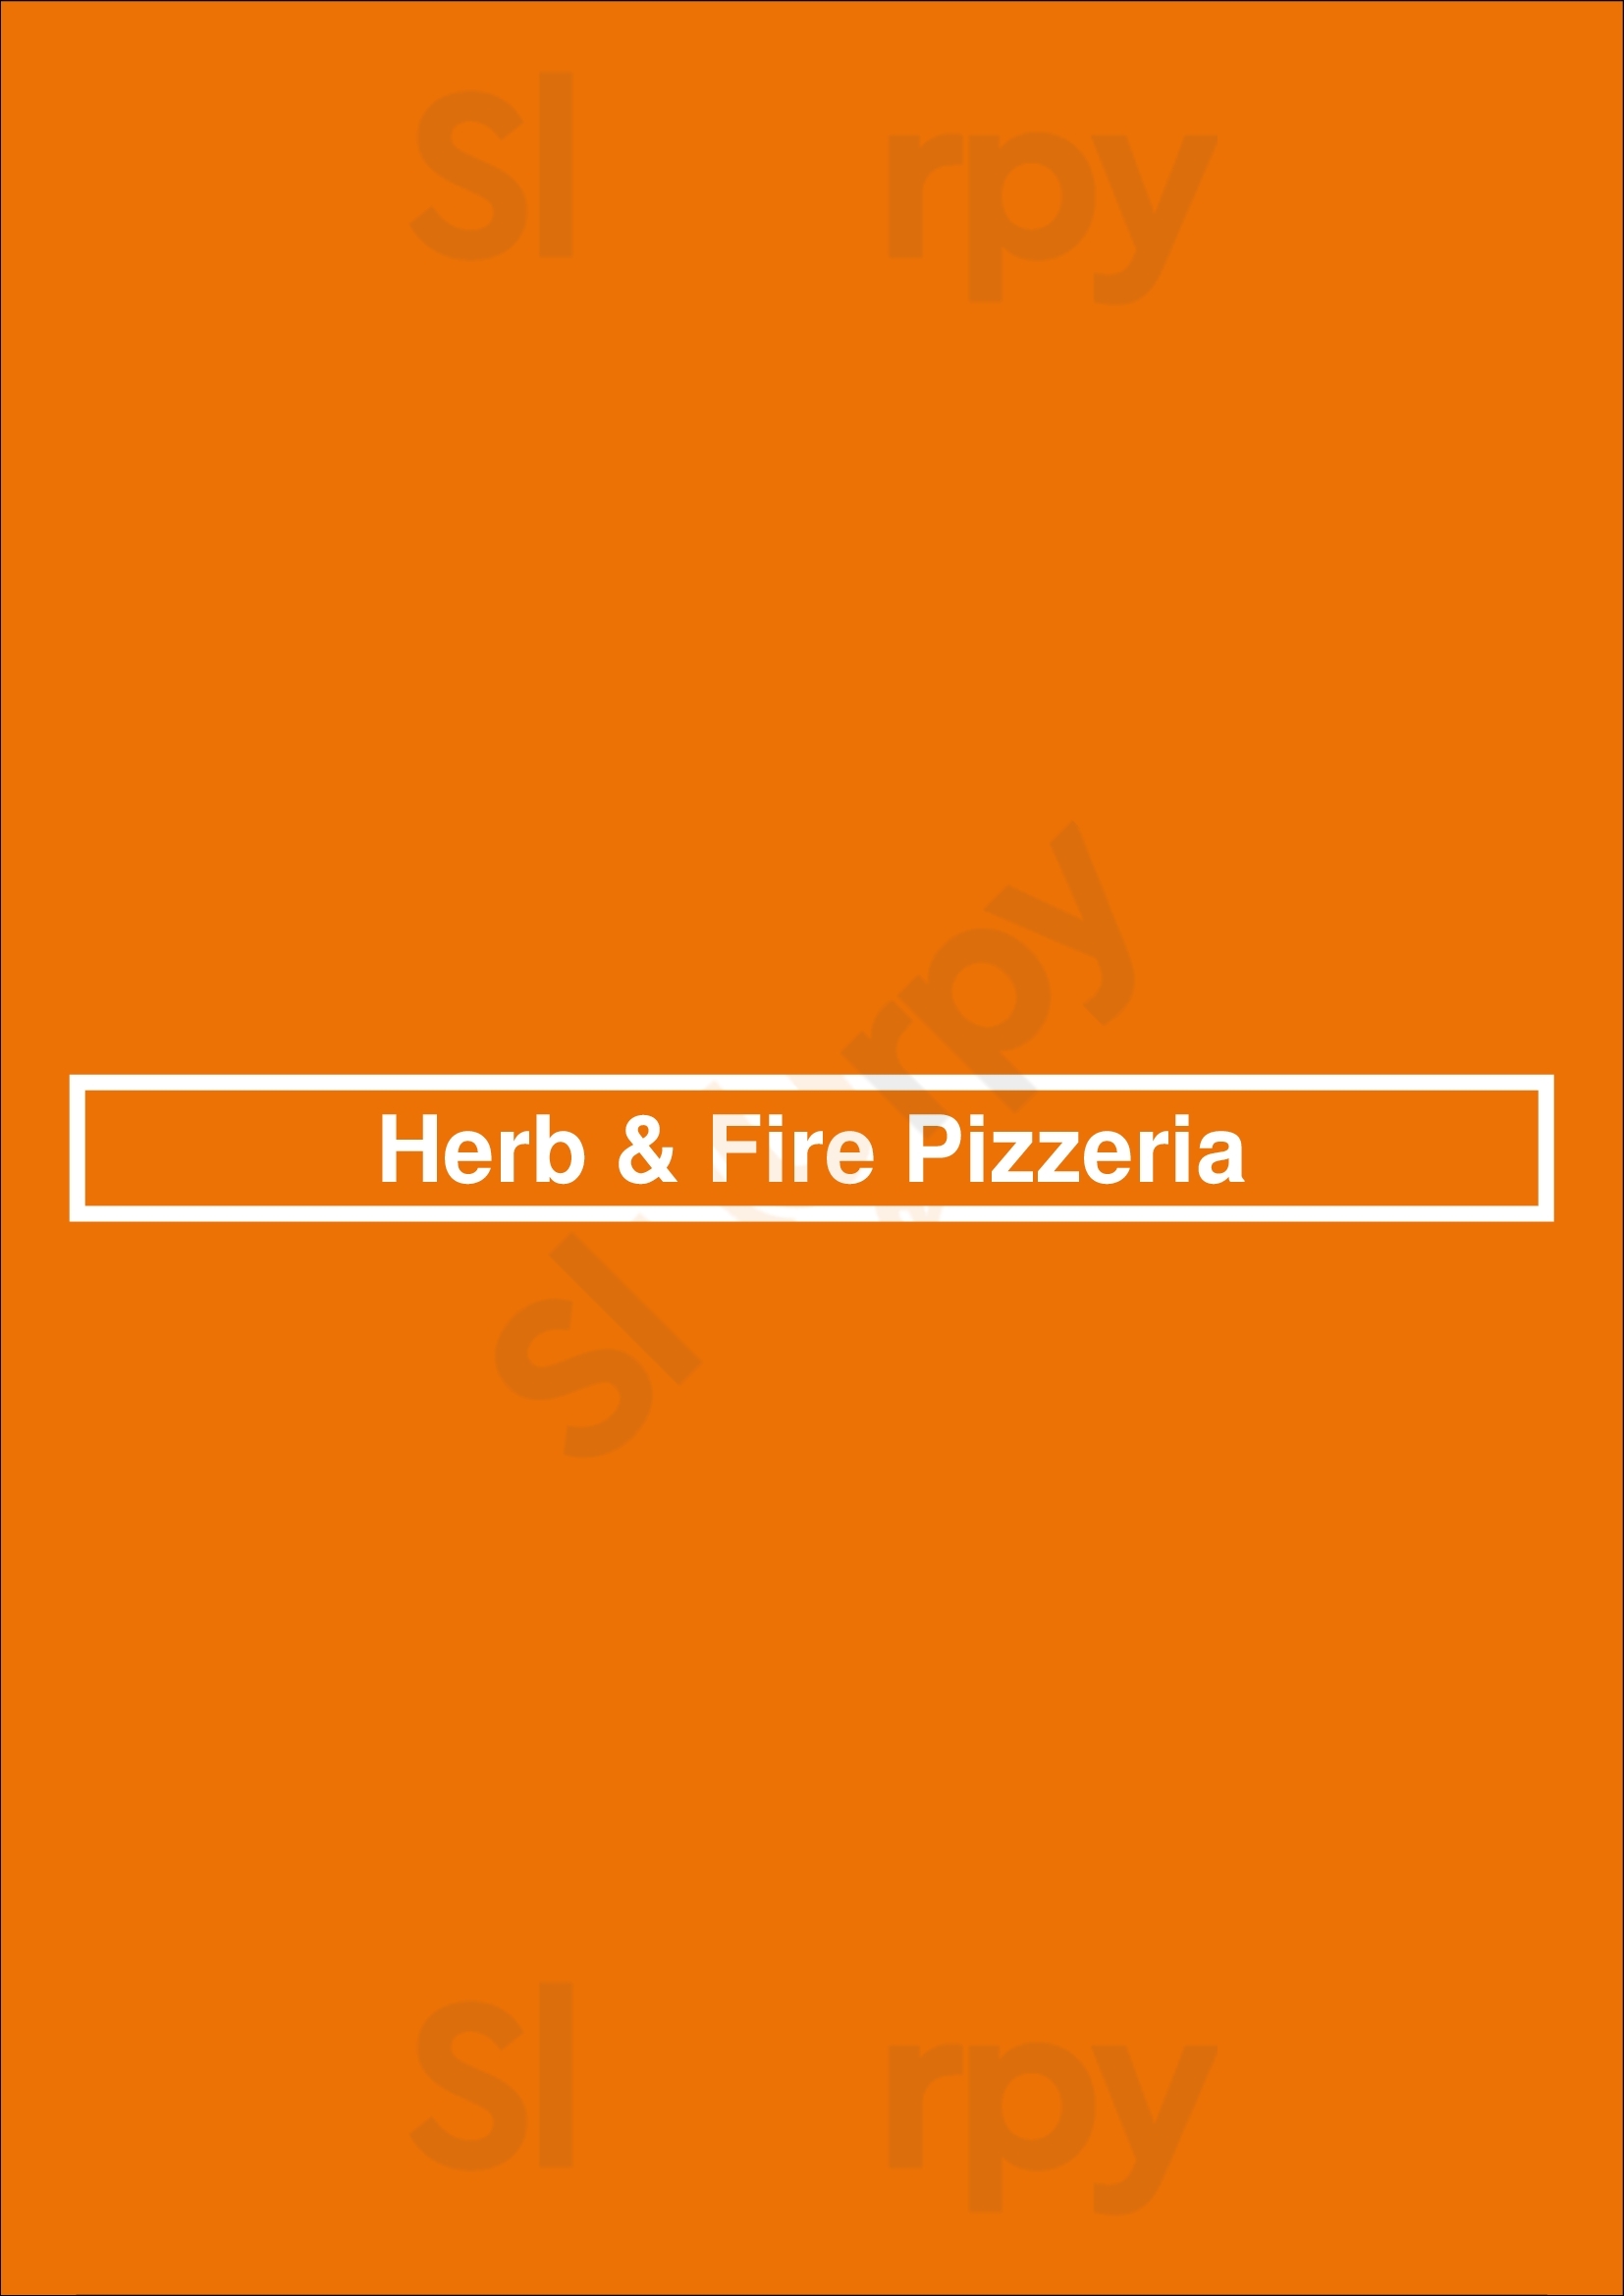 Herb & Fire Pizzeria Grand Rapids Menu - 1